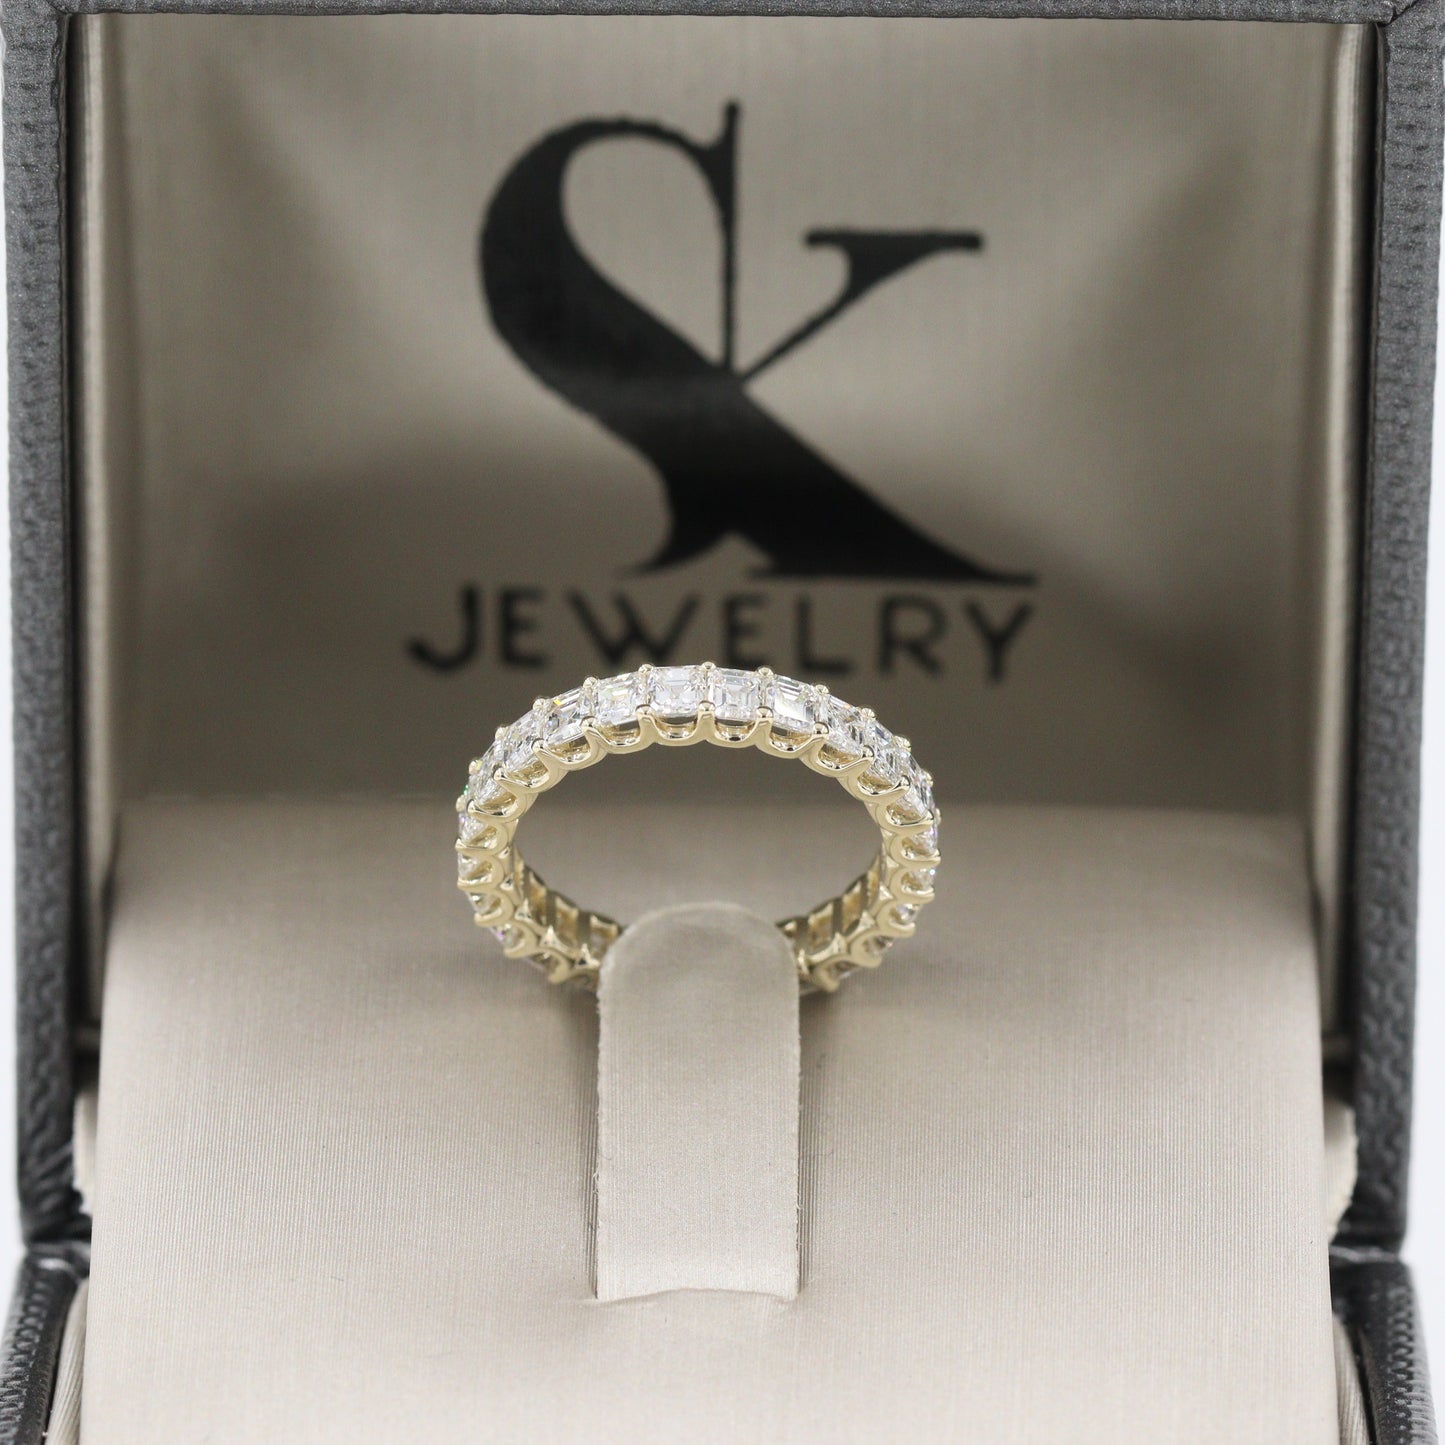 2ct Asscher Cut Diamond Wedding Band/Stackable Full Diamond U Shape Prong Wedding Ring/Asscher Cut Natural Diamond Band/Anniversary gift